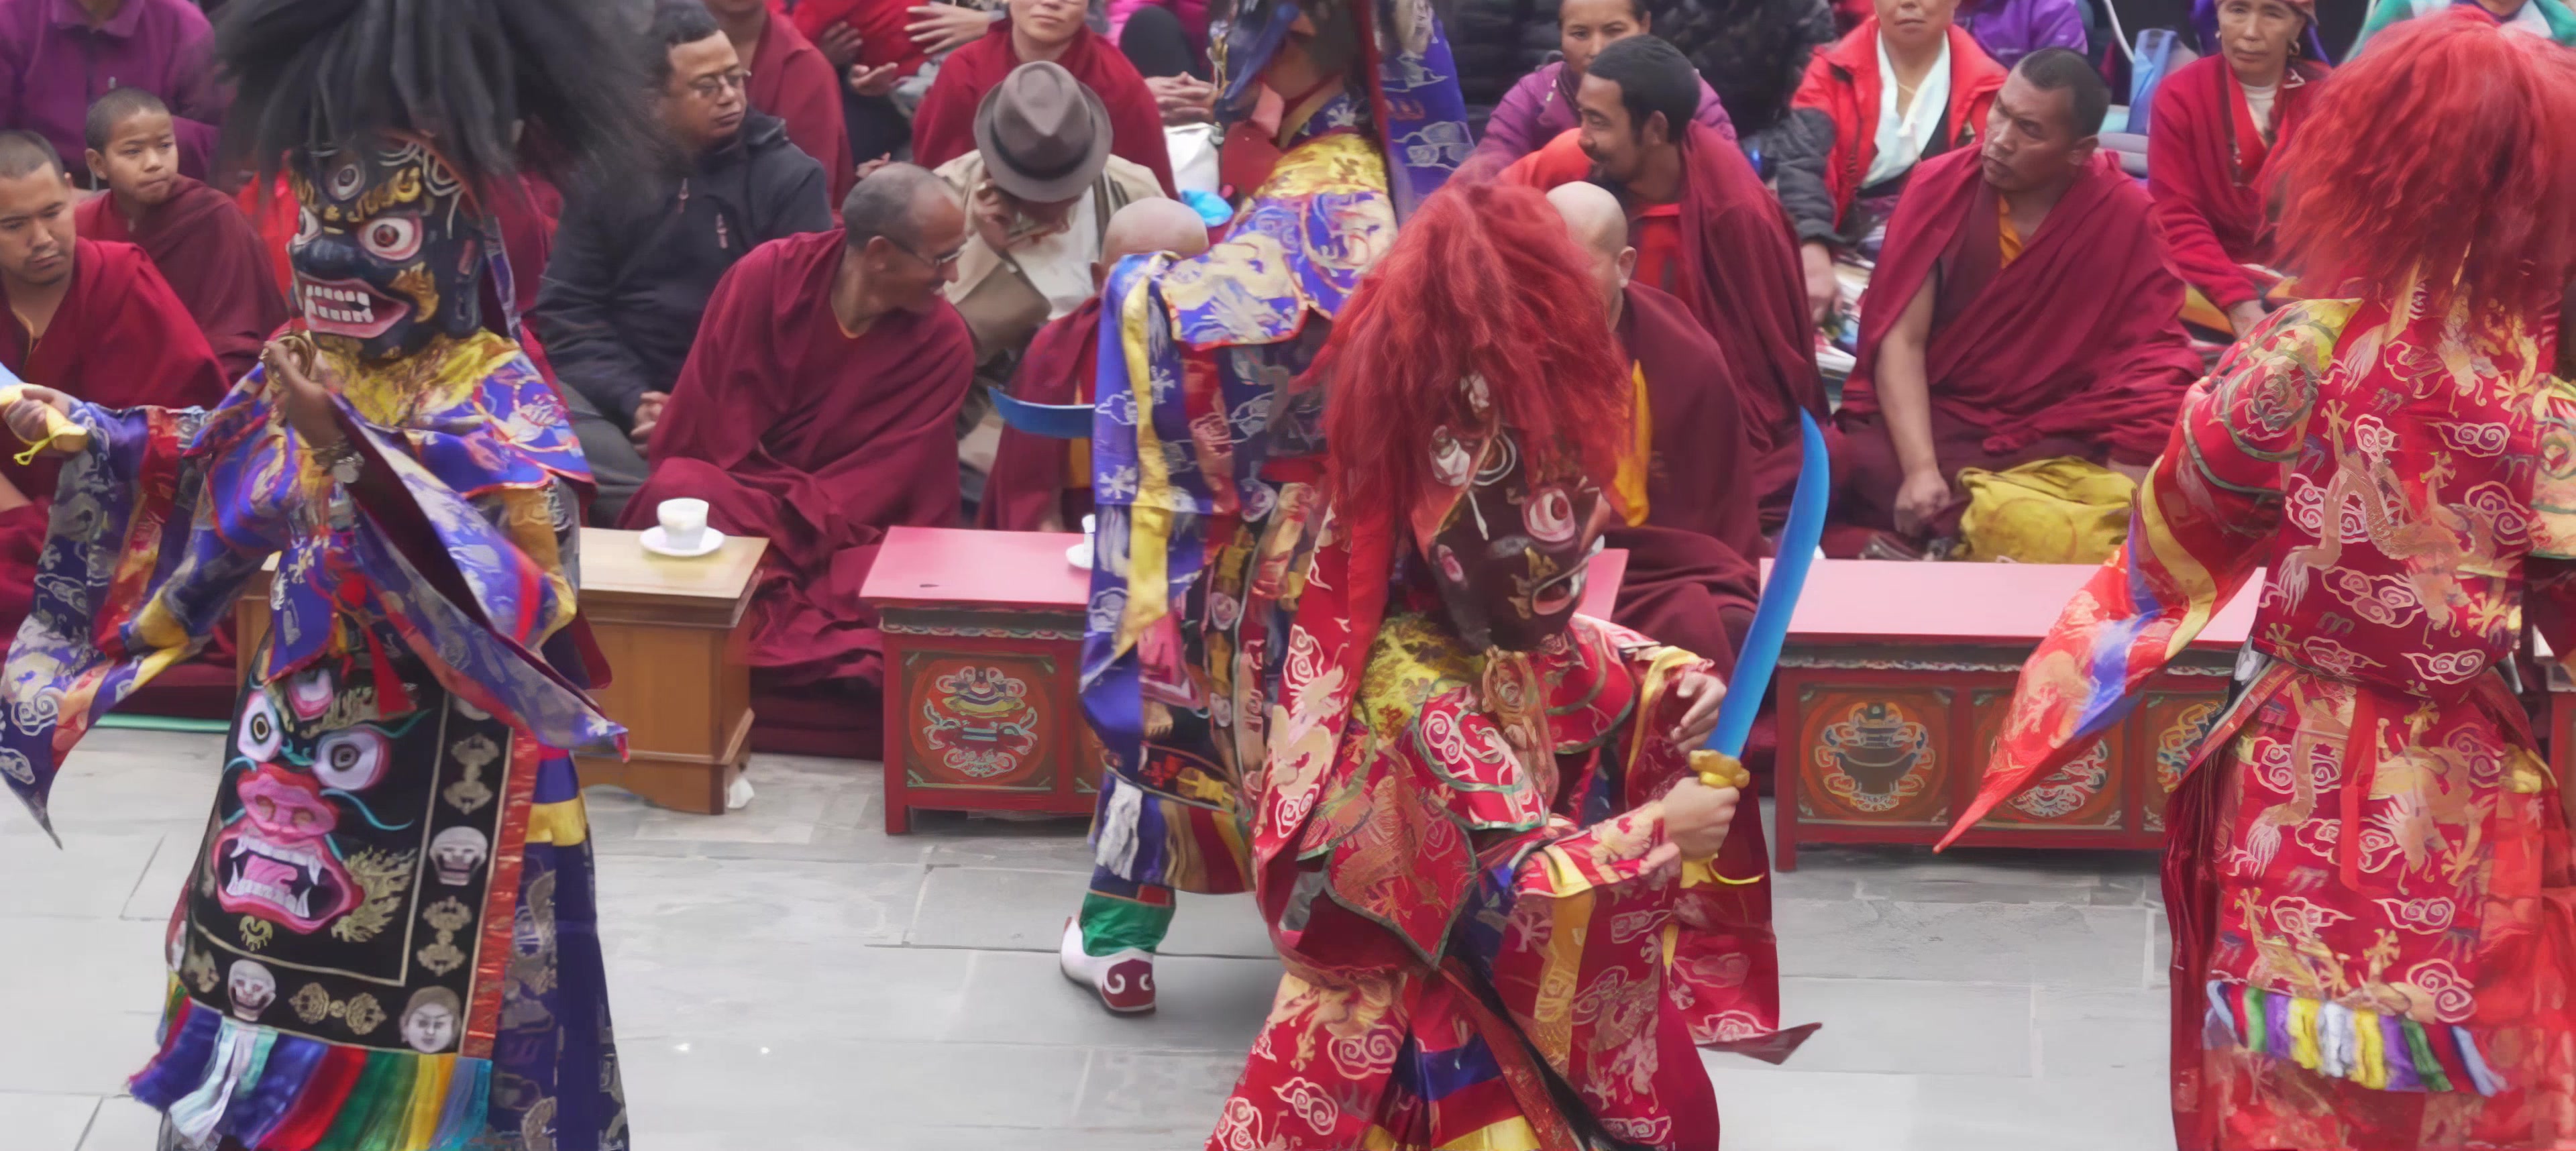 【遨游摄影】不丹戒楚节、尼泊尔洒红节摄影创作11日游-中青旅遨游网